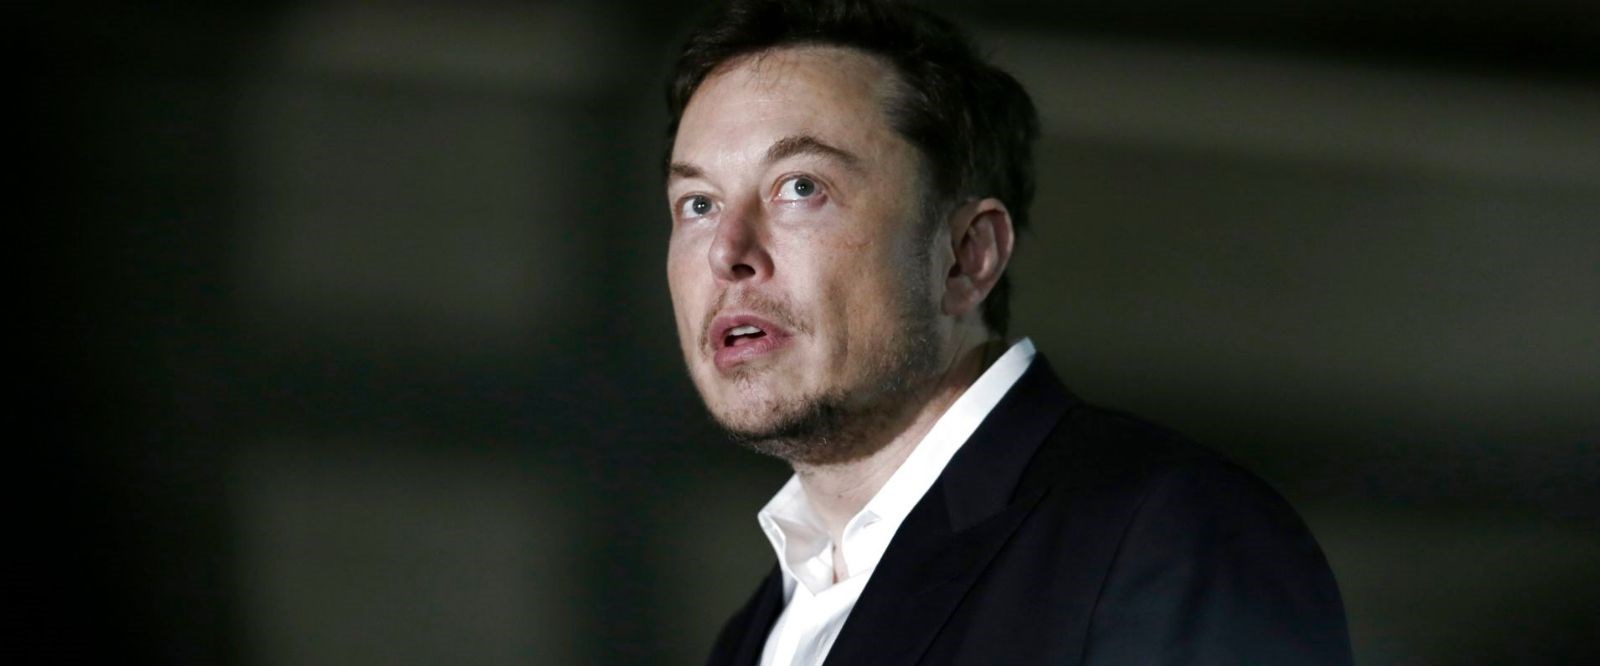 Canlı yayında uyuşturucu kullanan Elon Musk’a Balıkesir’den tepki